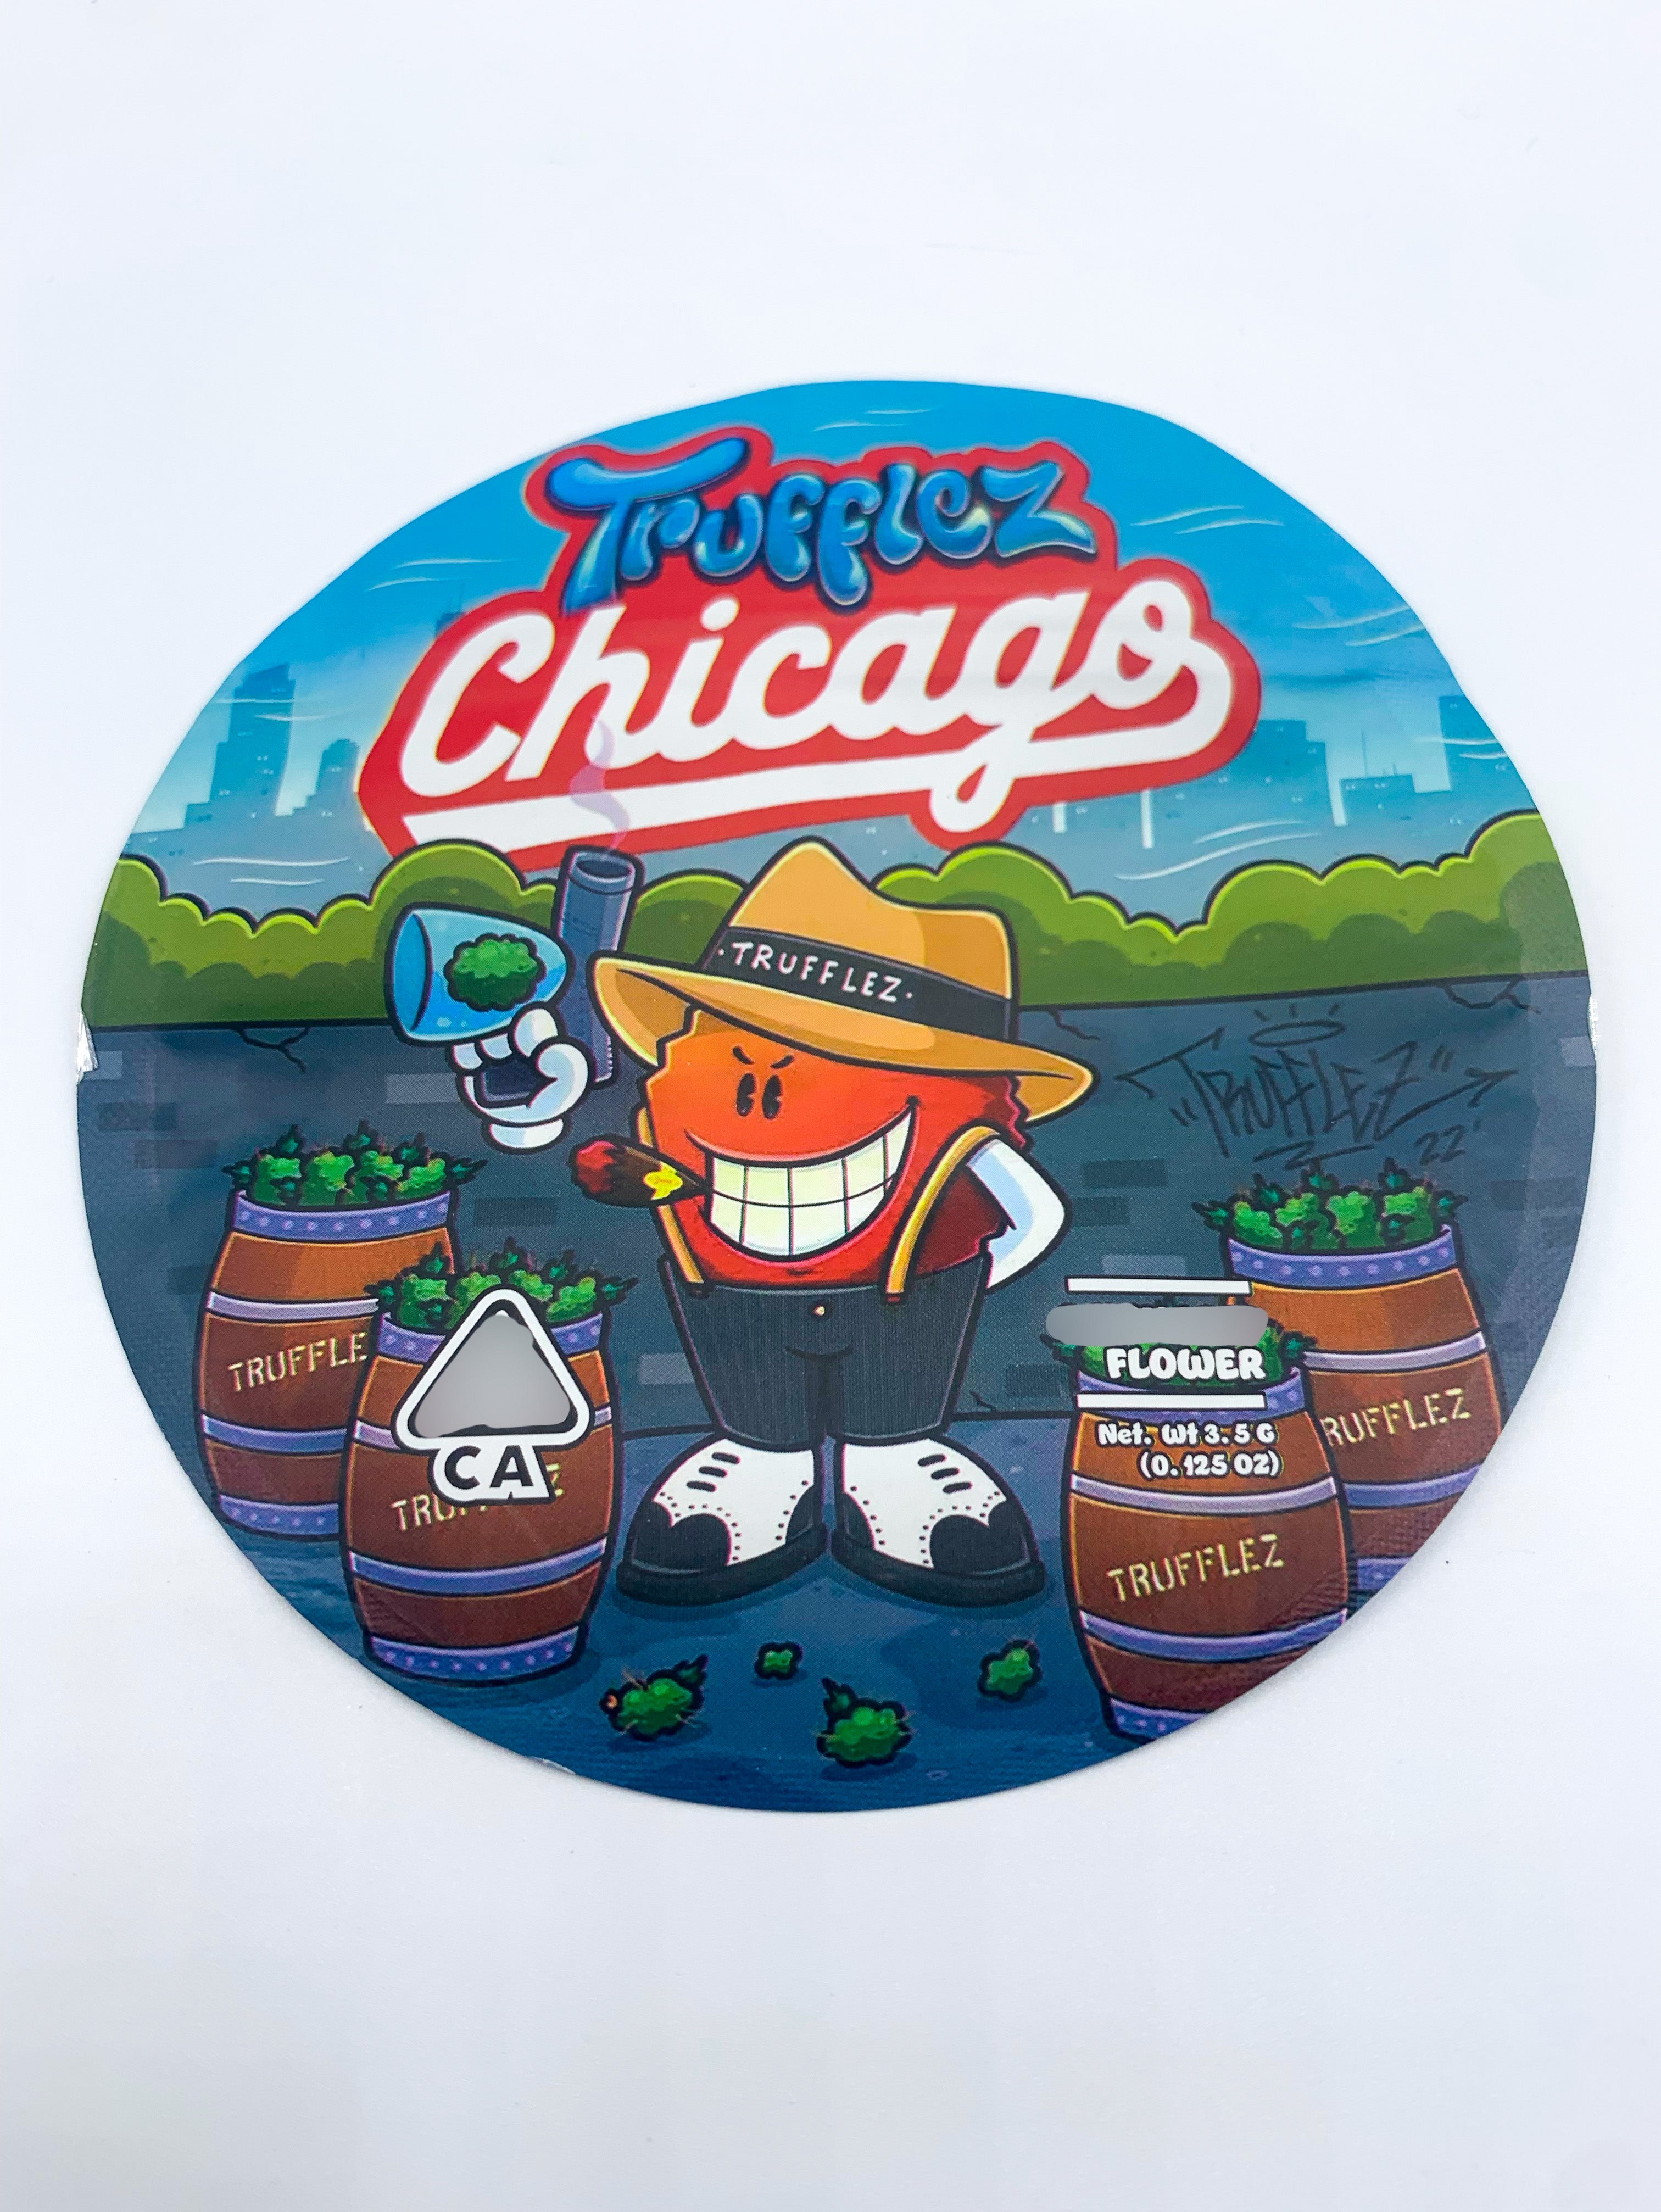 3D Trufflez Chicago 3.5g Mylar Bags